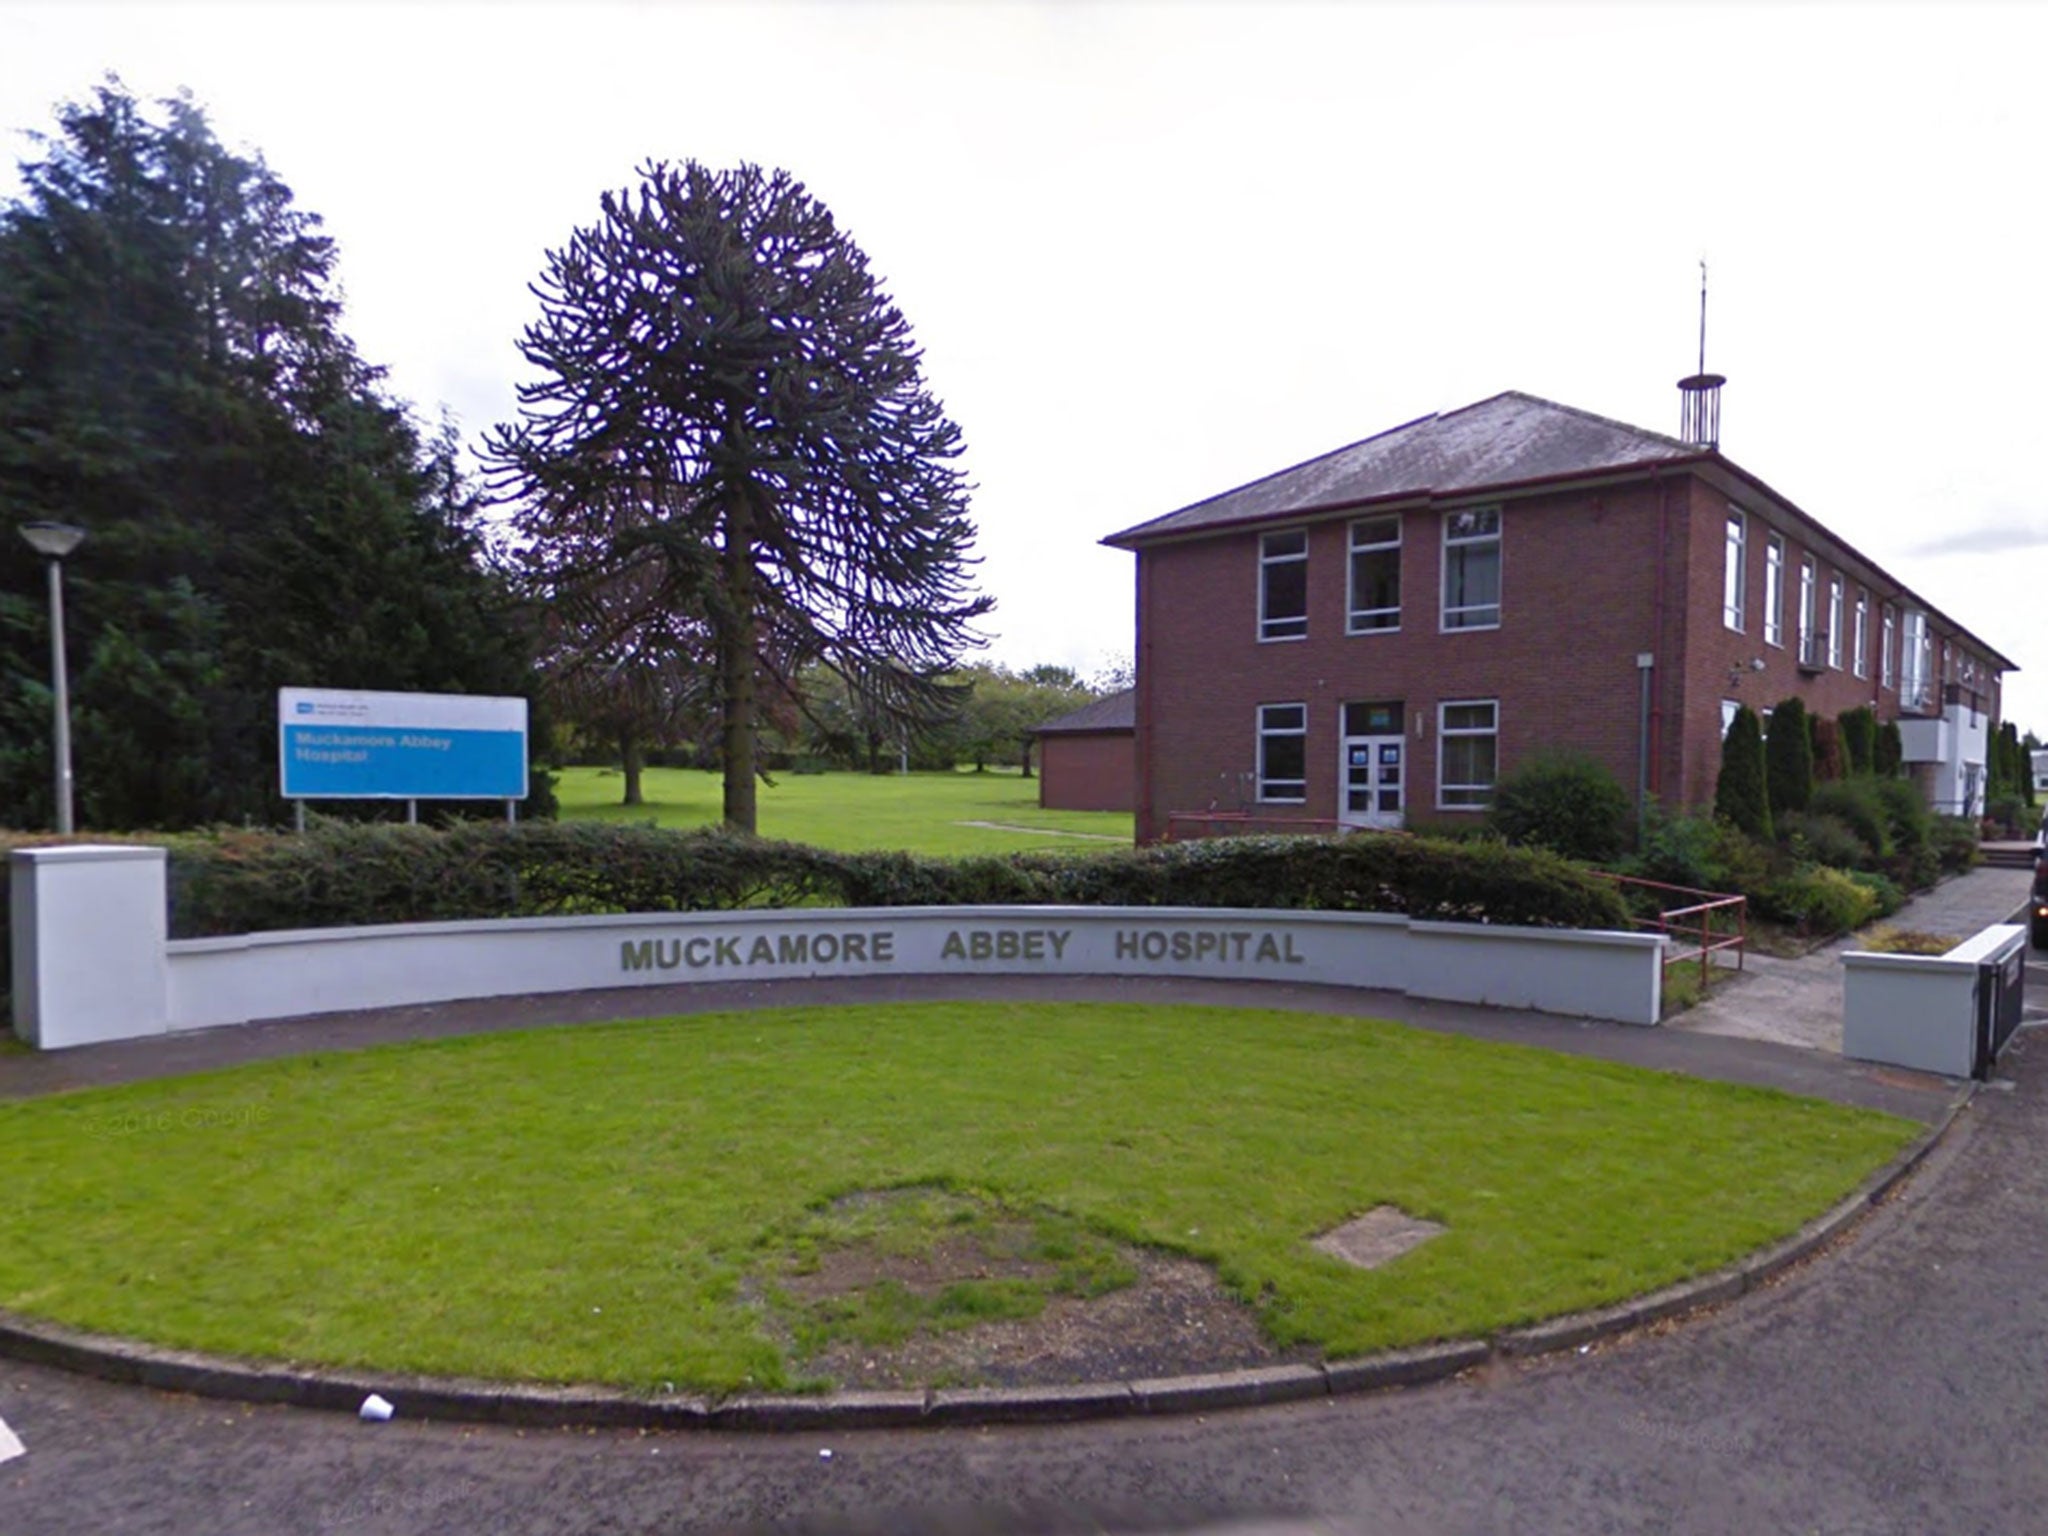 Muckamore Abbey Hospital in Antrim, Northern Ireland